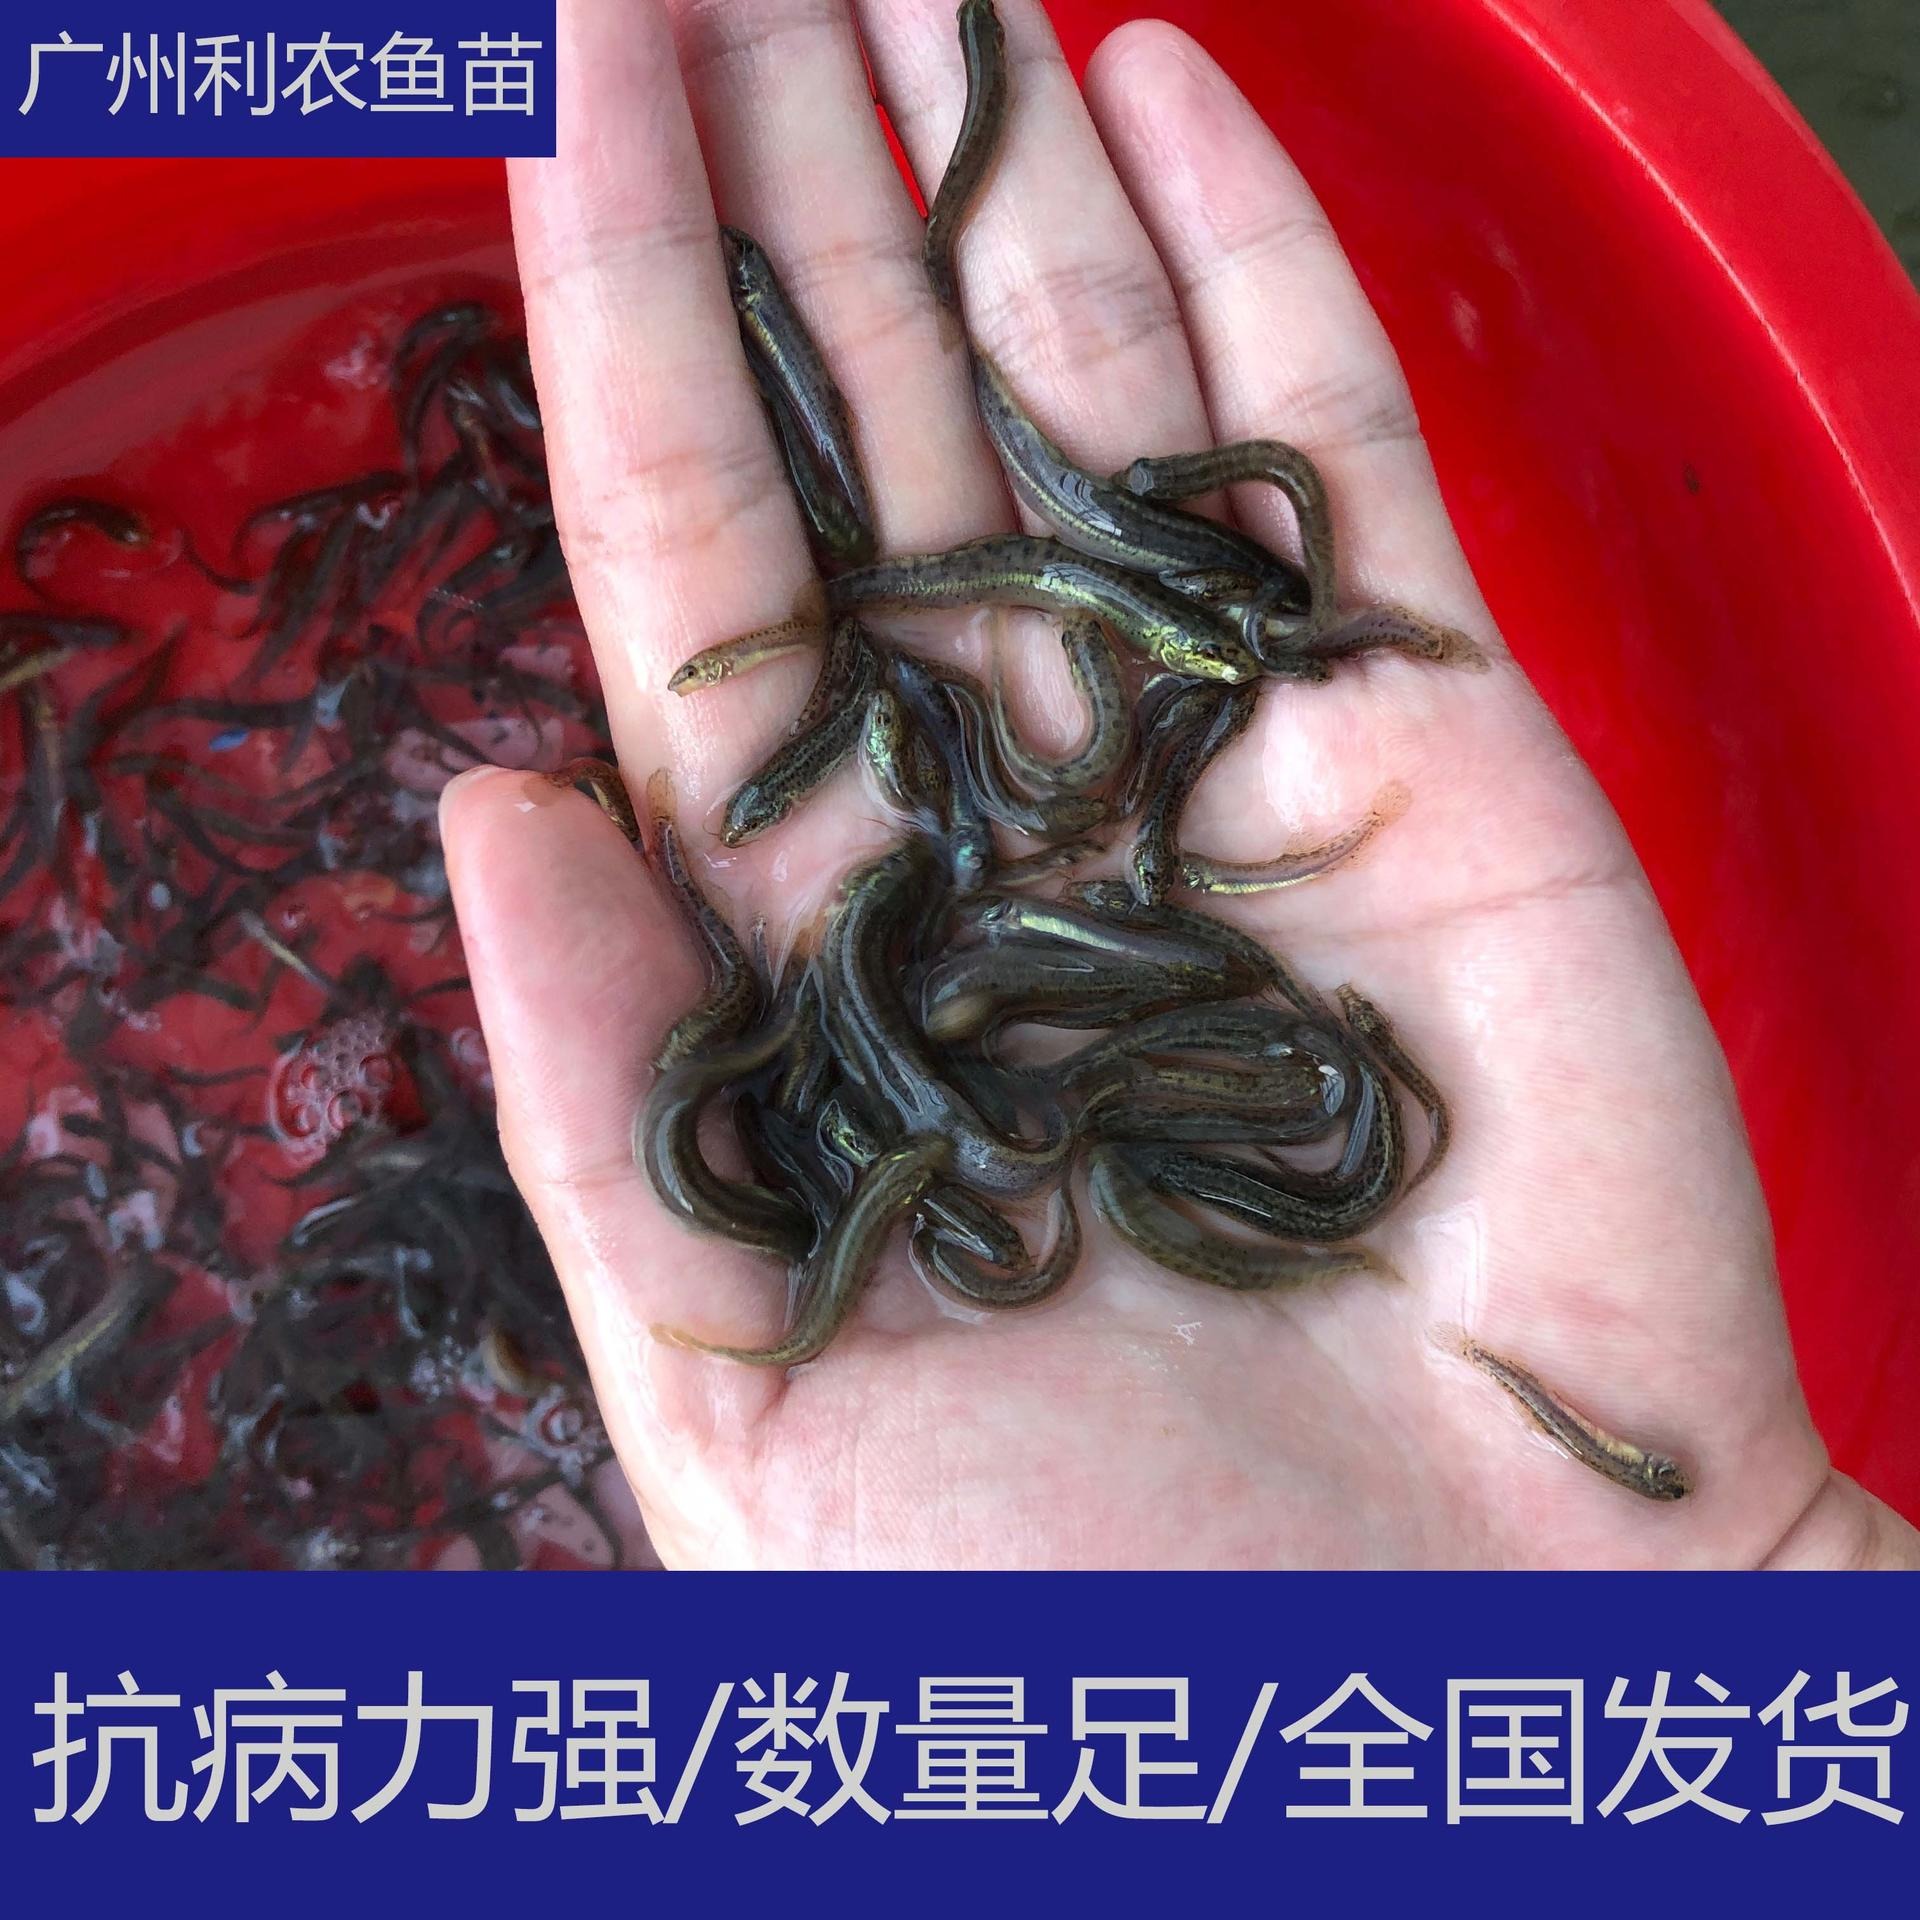 齐规格 江西抚州台湾一号泥鳅苗 5cm精品泥鳅苗